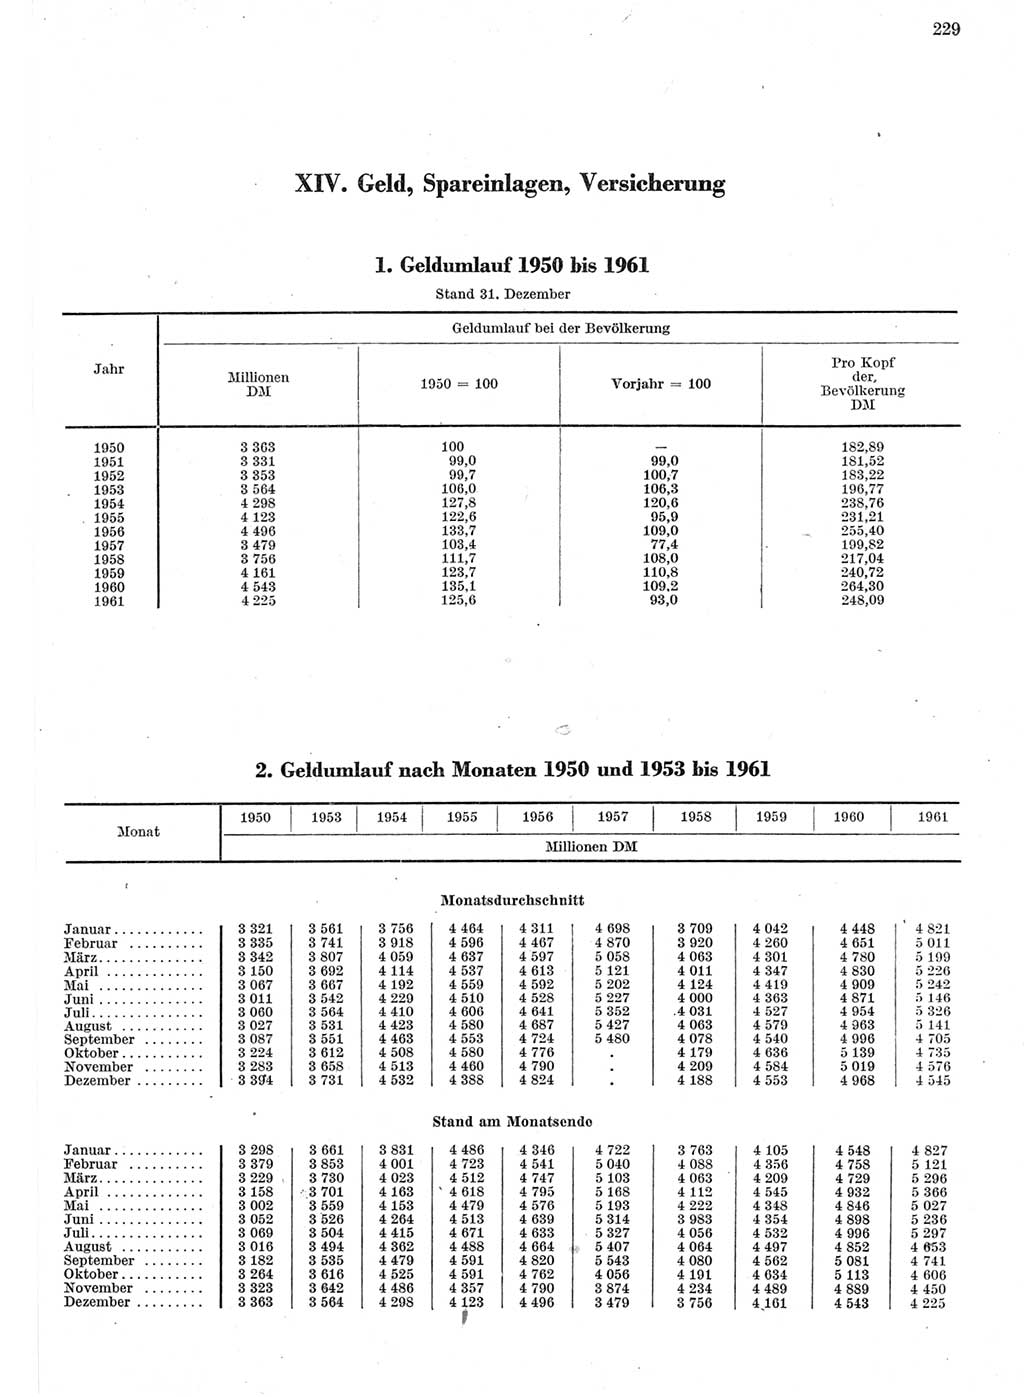 Statistisches Jahrbuch der Deutschen Demokratischen Republik (DDR) 1962, Seite 229 (Stat. Jb. DDR 1962, S. 229)